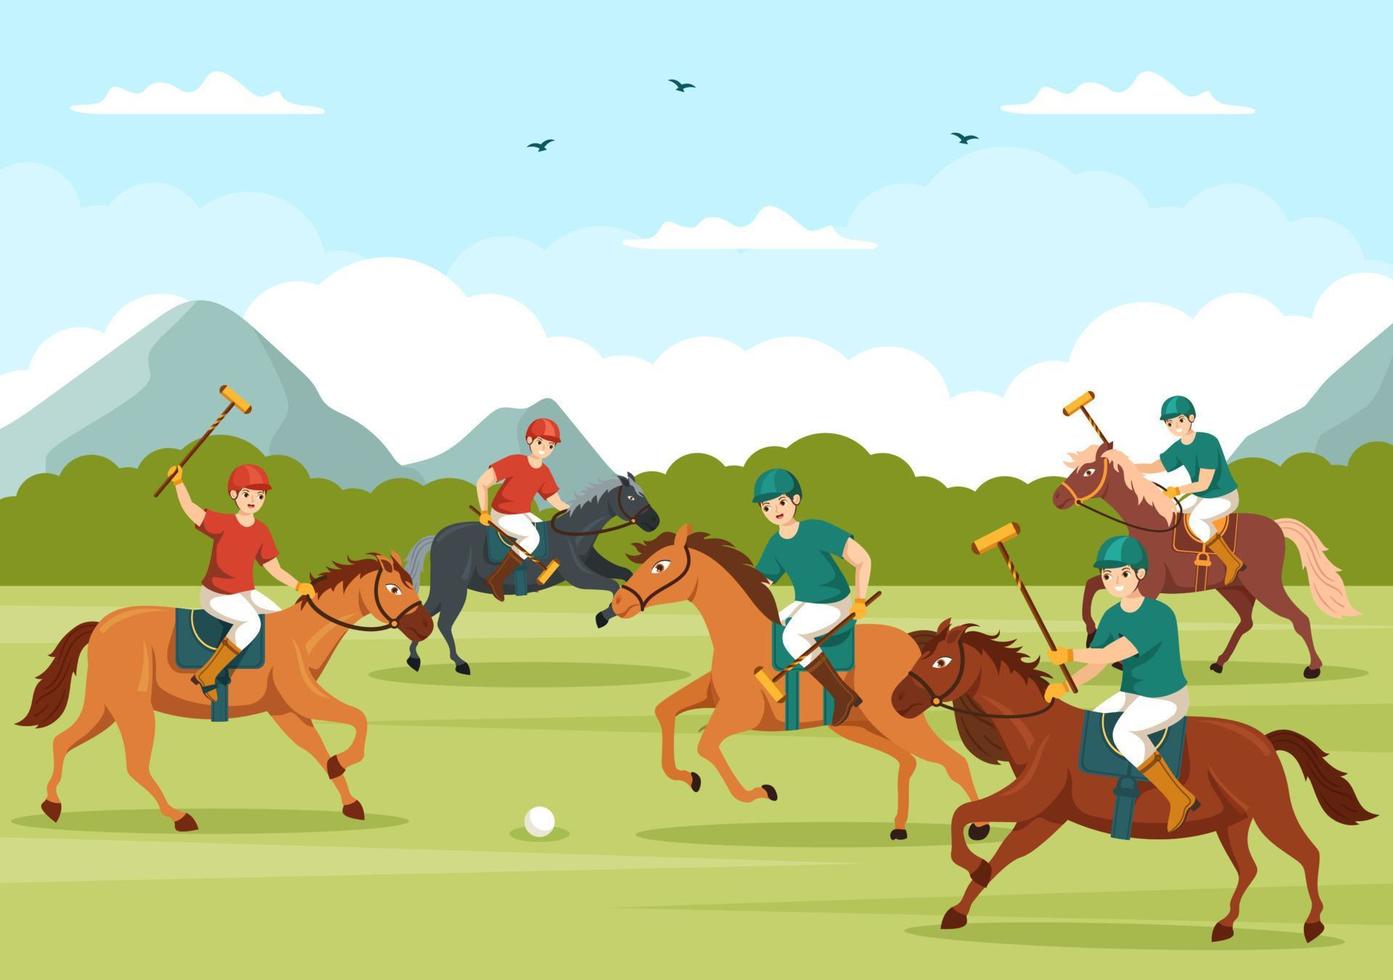 deportes de polo a caballo con jugador montando a caballo y sosteniendo equipo de uso de palo en cartel de dibujos animados planos ilustración de plantilla dibujada a mano vector